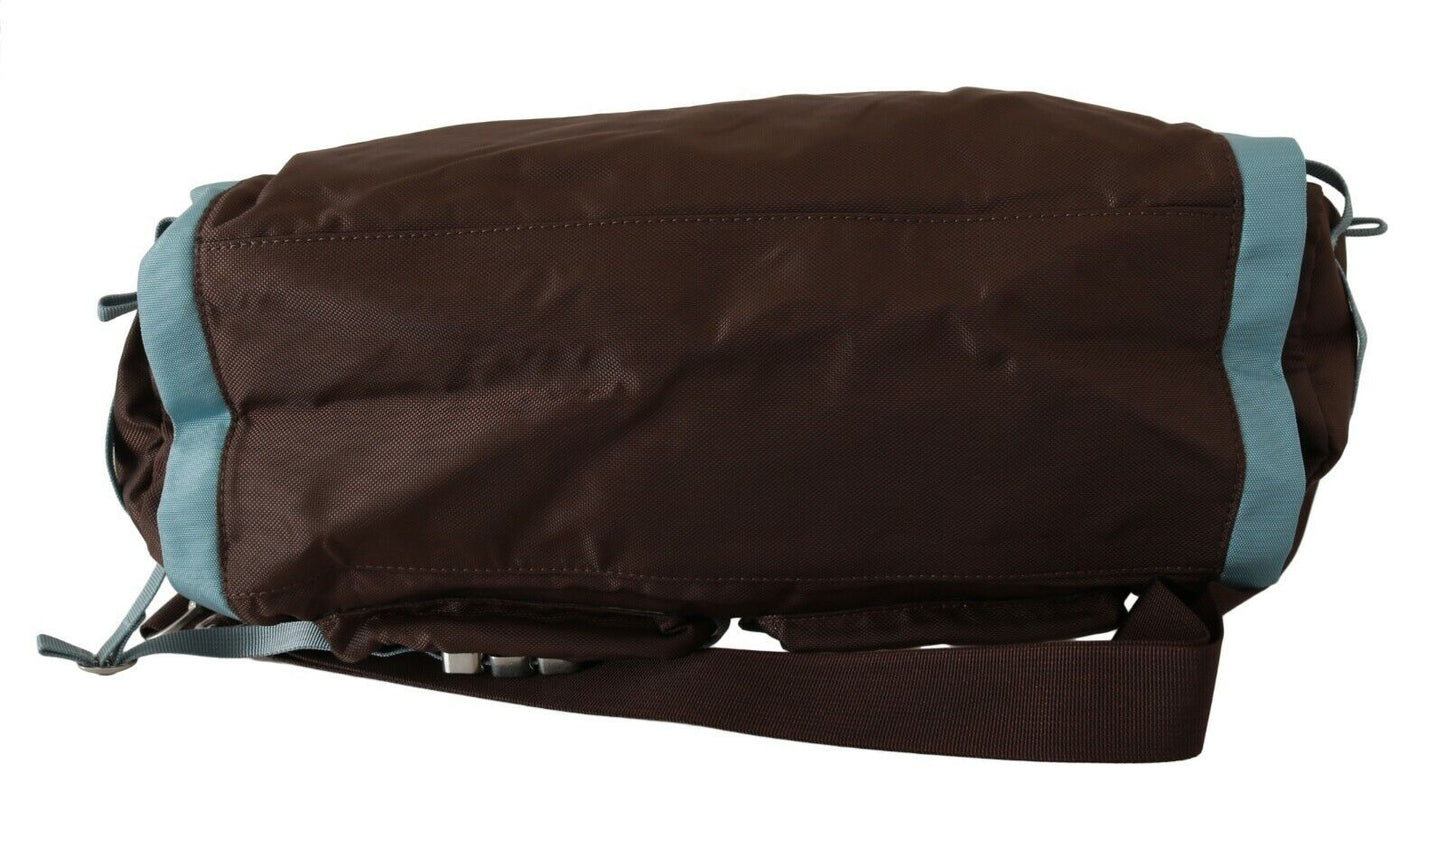 Elegant Duffel Travel Bag in Earthy Brown